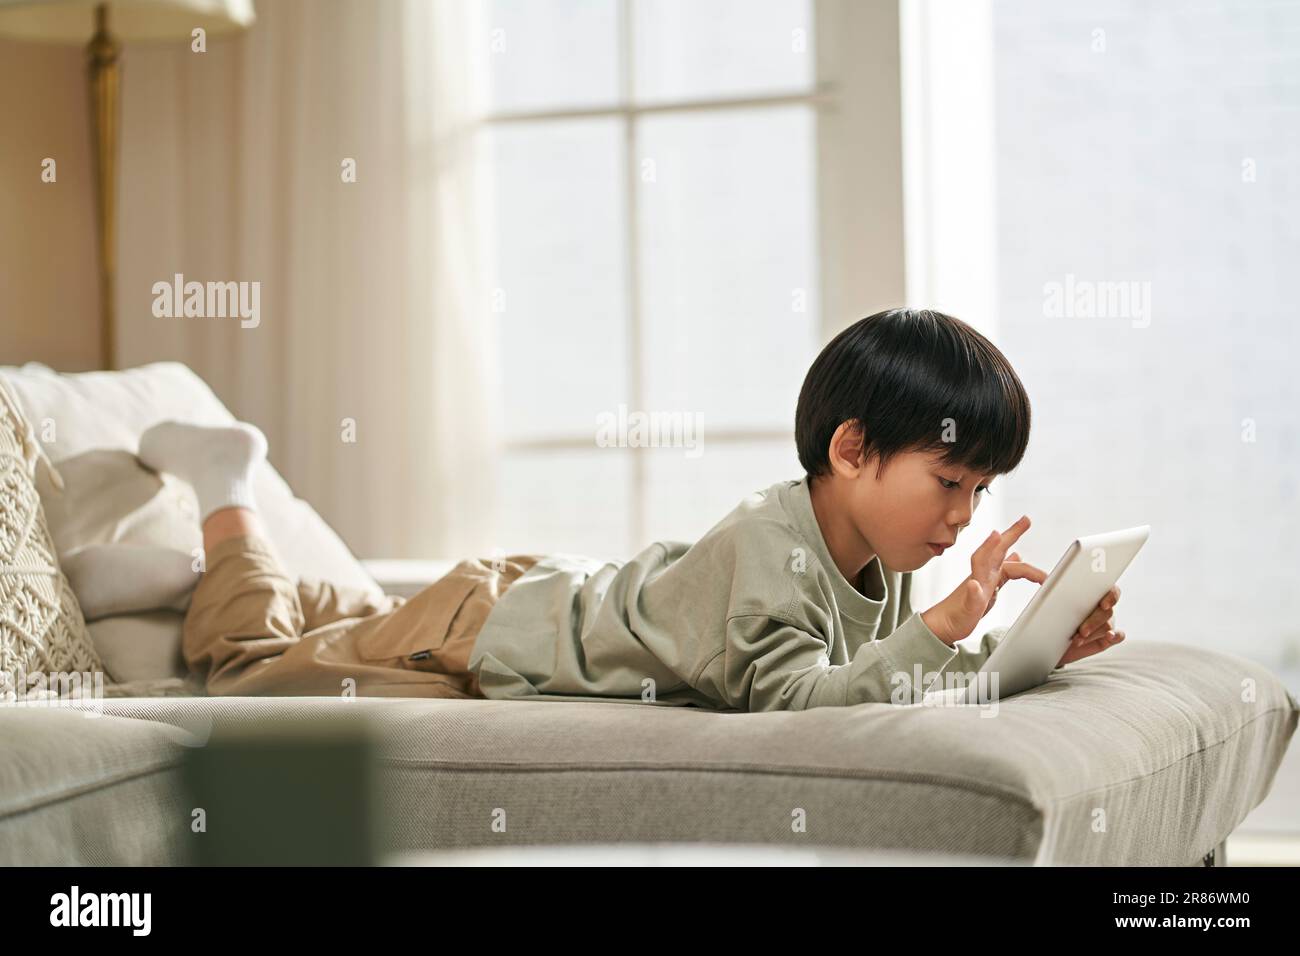 petit garçon asiatique de cinq ans allongé sur le canapé de la famille et jouant à un jeu informatique avec une tablette numérique Banque D'Images